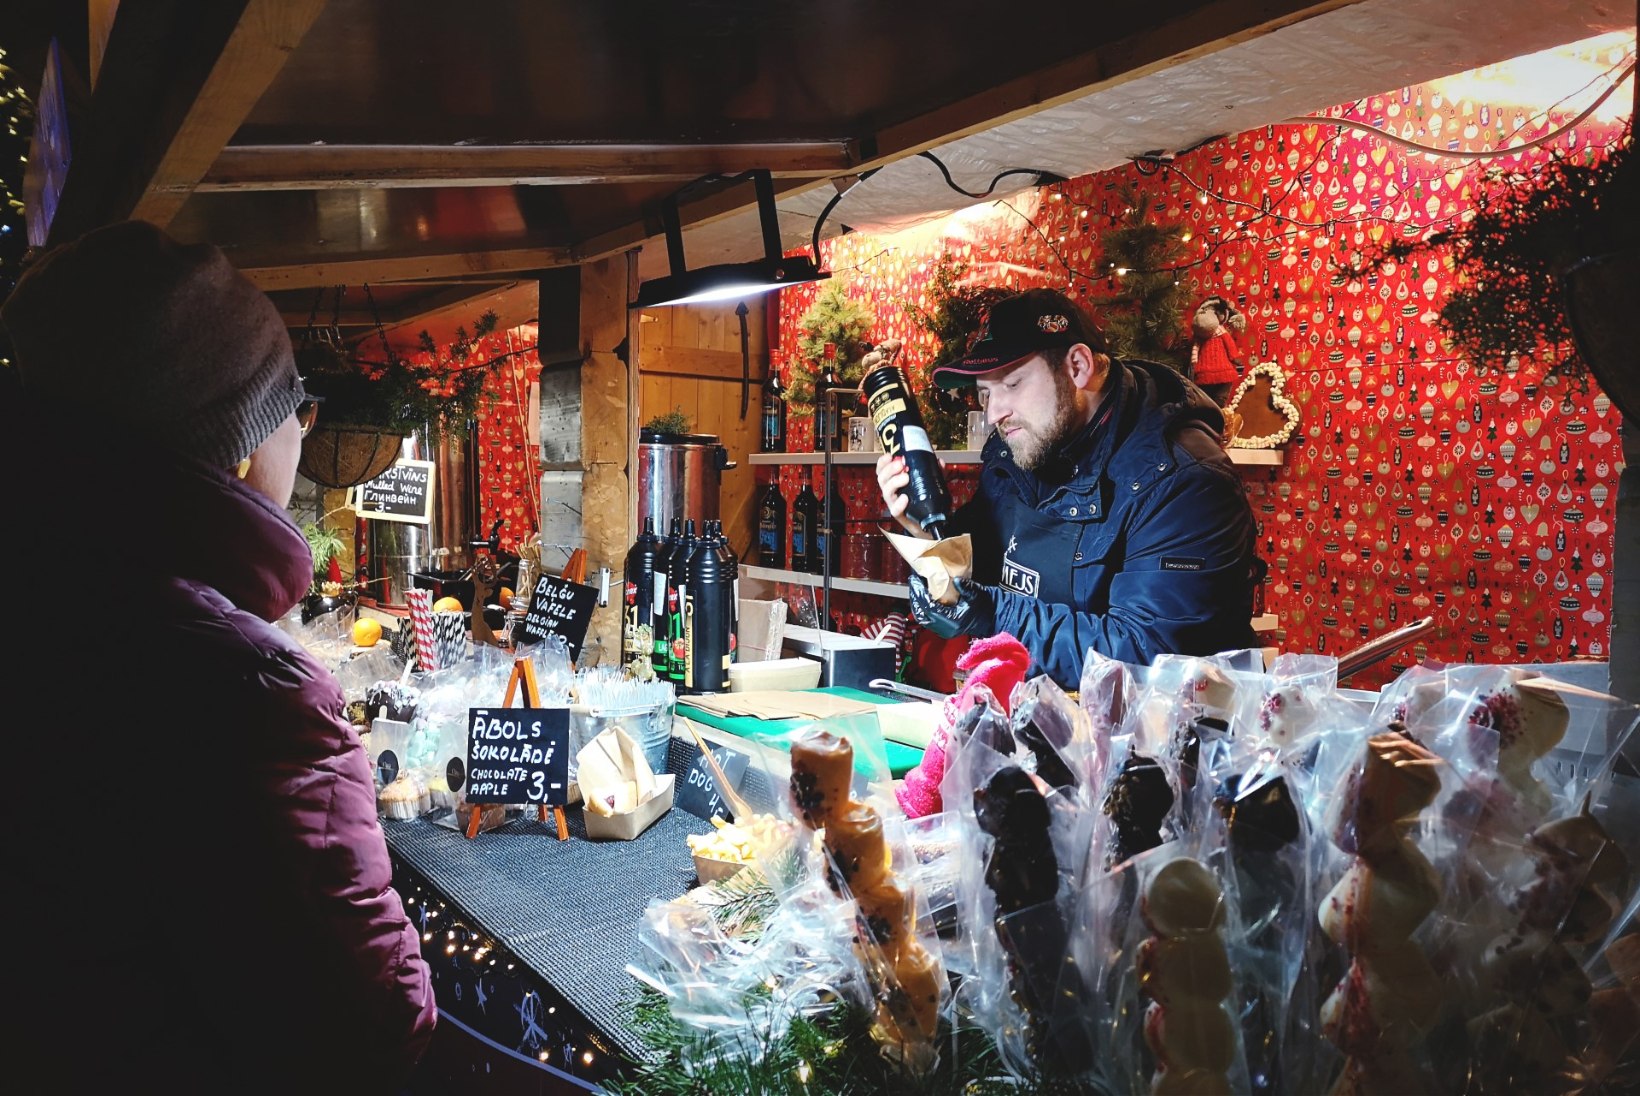 FOTOD JA VIDEO | Riia jõuluturg: üllatavalt muhe, taskukohane ja kompaktne – kindel soovitus minna!